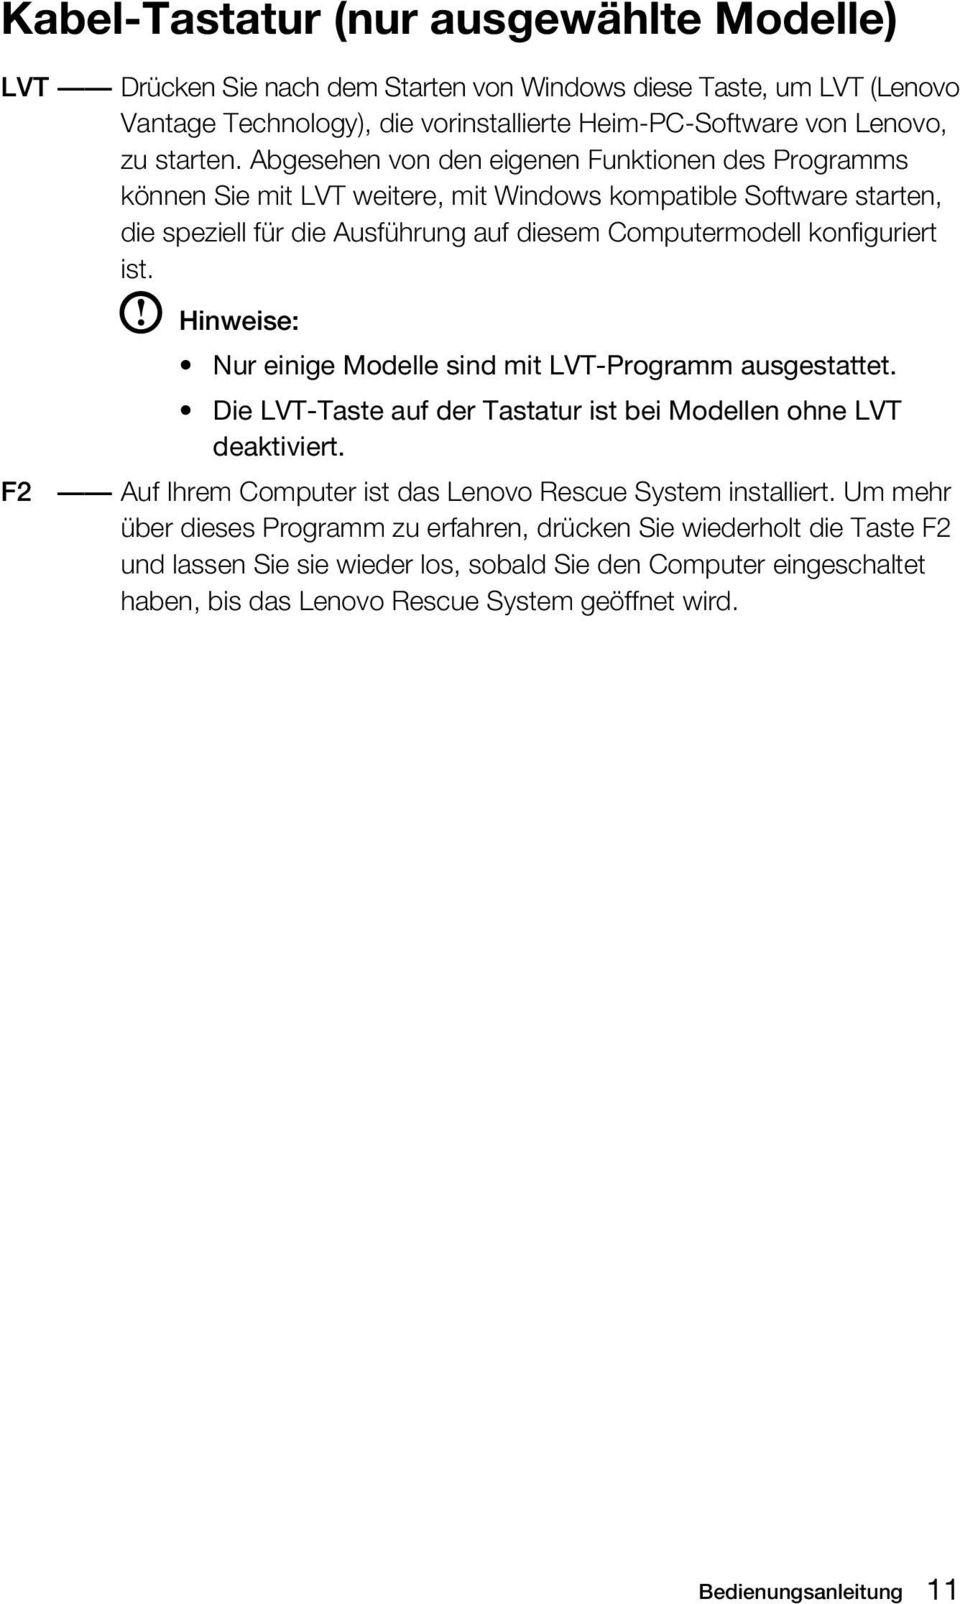 Hinweise: Nur einige Modelle sind mit LVT-Programm ausgestattet. Die LVT-Taste auf der Tastatur ist bei Modellen ohne LVT deaktiviert. F2 Auf Ihrem Computer ist das Lenovo Rescue System installiert.